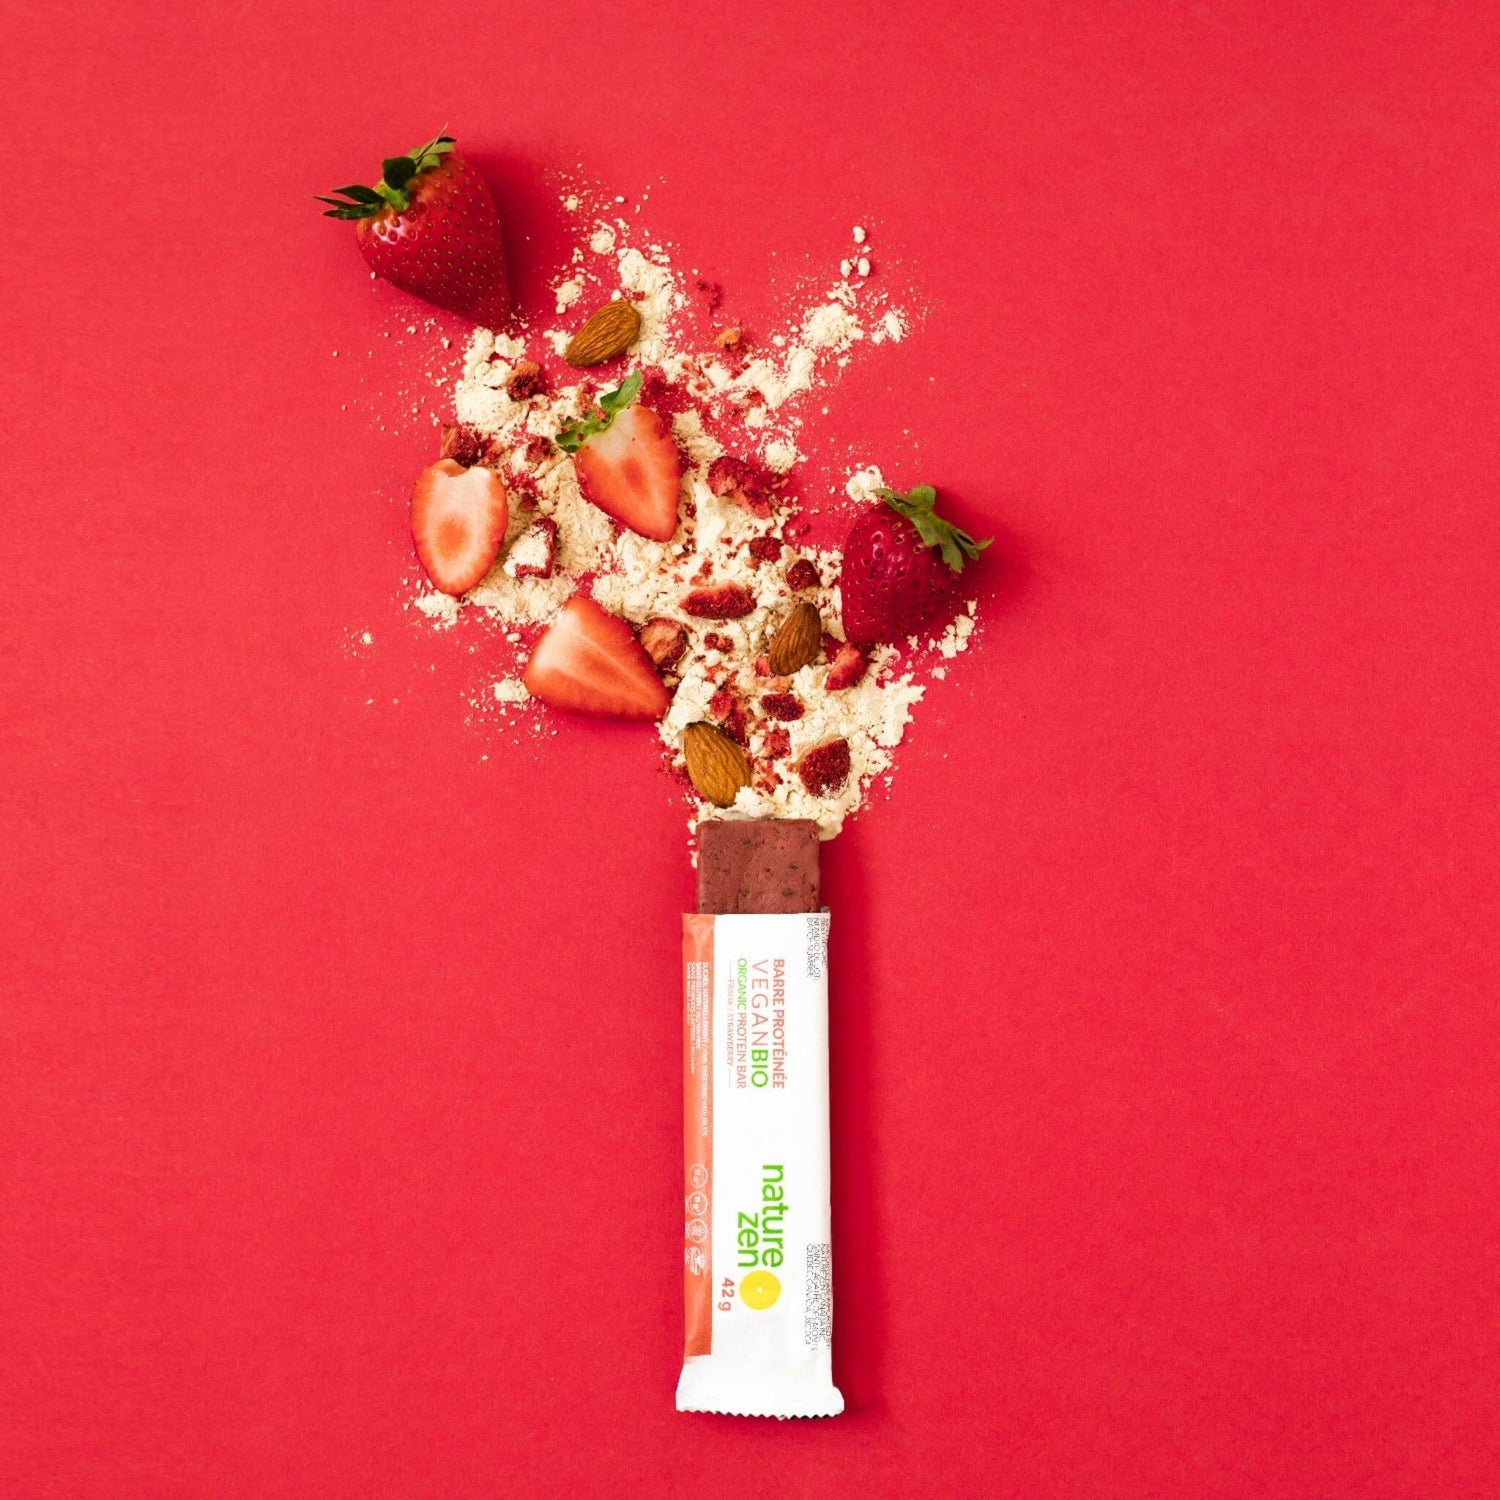 Nature Zen Organic Vegan Protein bars - Strawberry bar [New Recipe]